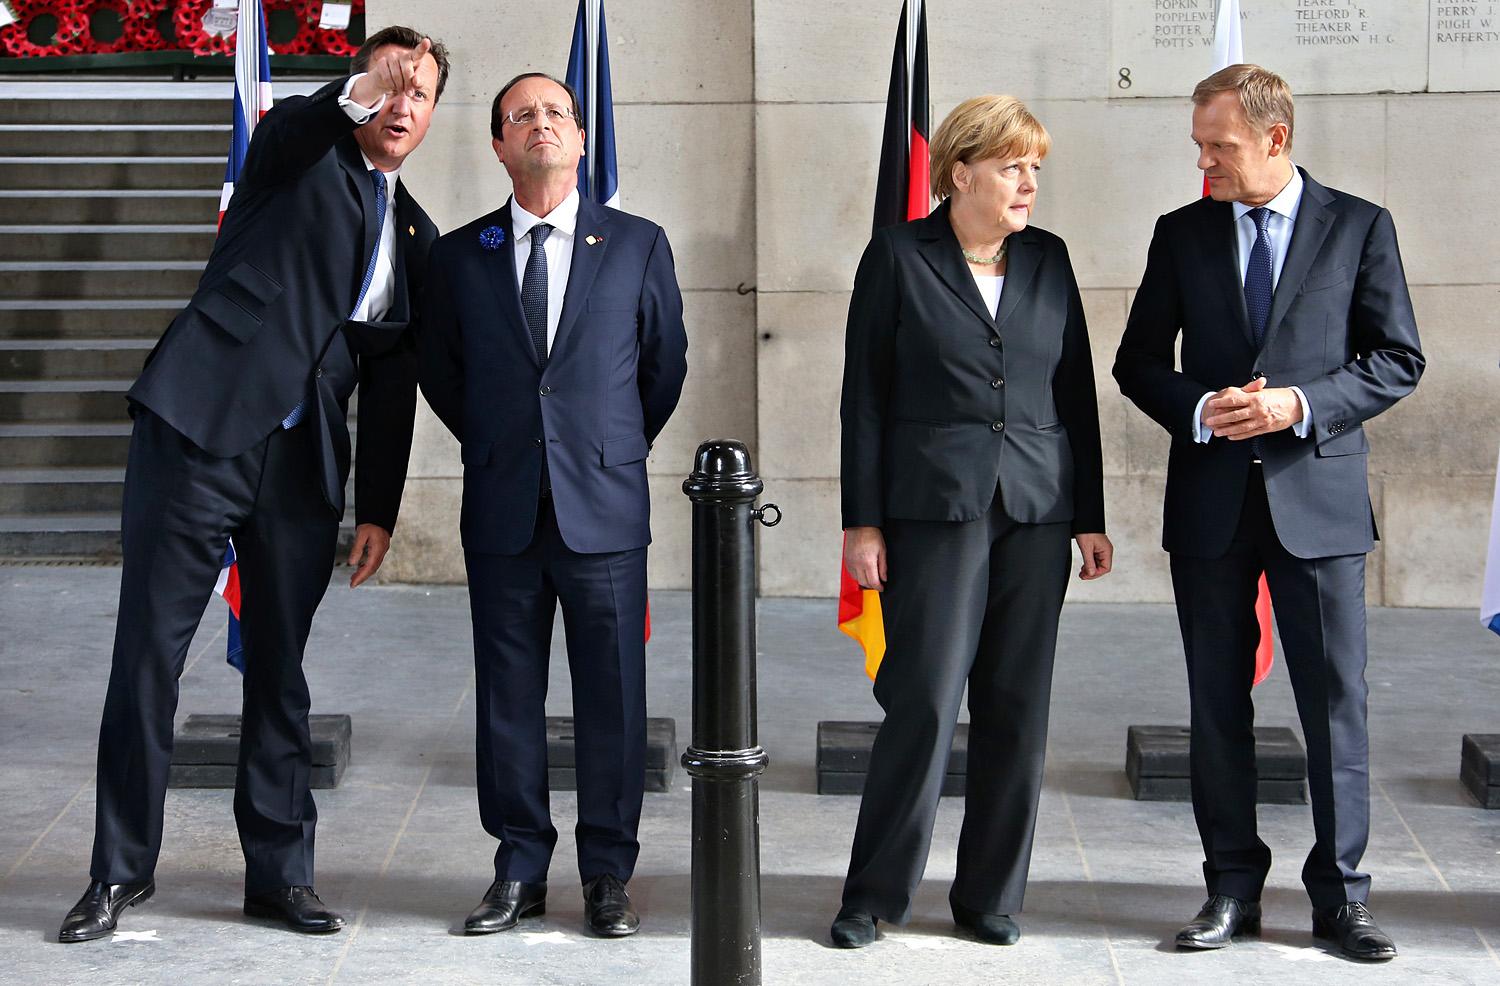 Maga Merkel ajánlotta volna fel a brüsszeli posztot Tusknak? (A kép baloldalán Cameron brit kormányfő és Hollande francia elnök)